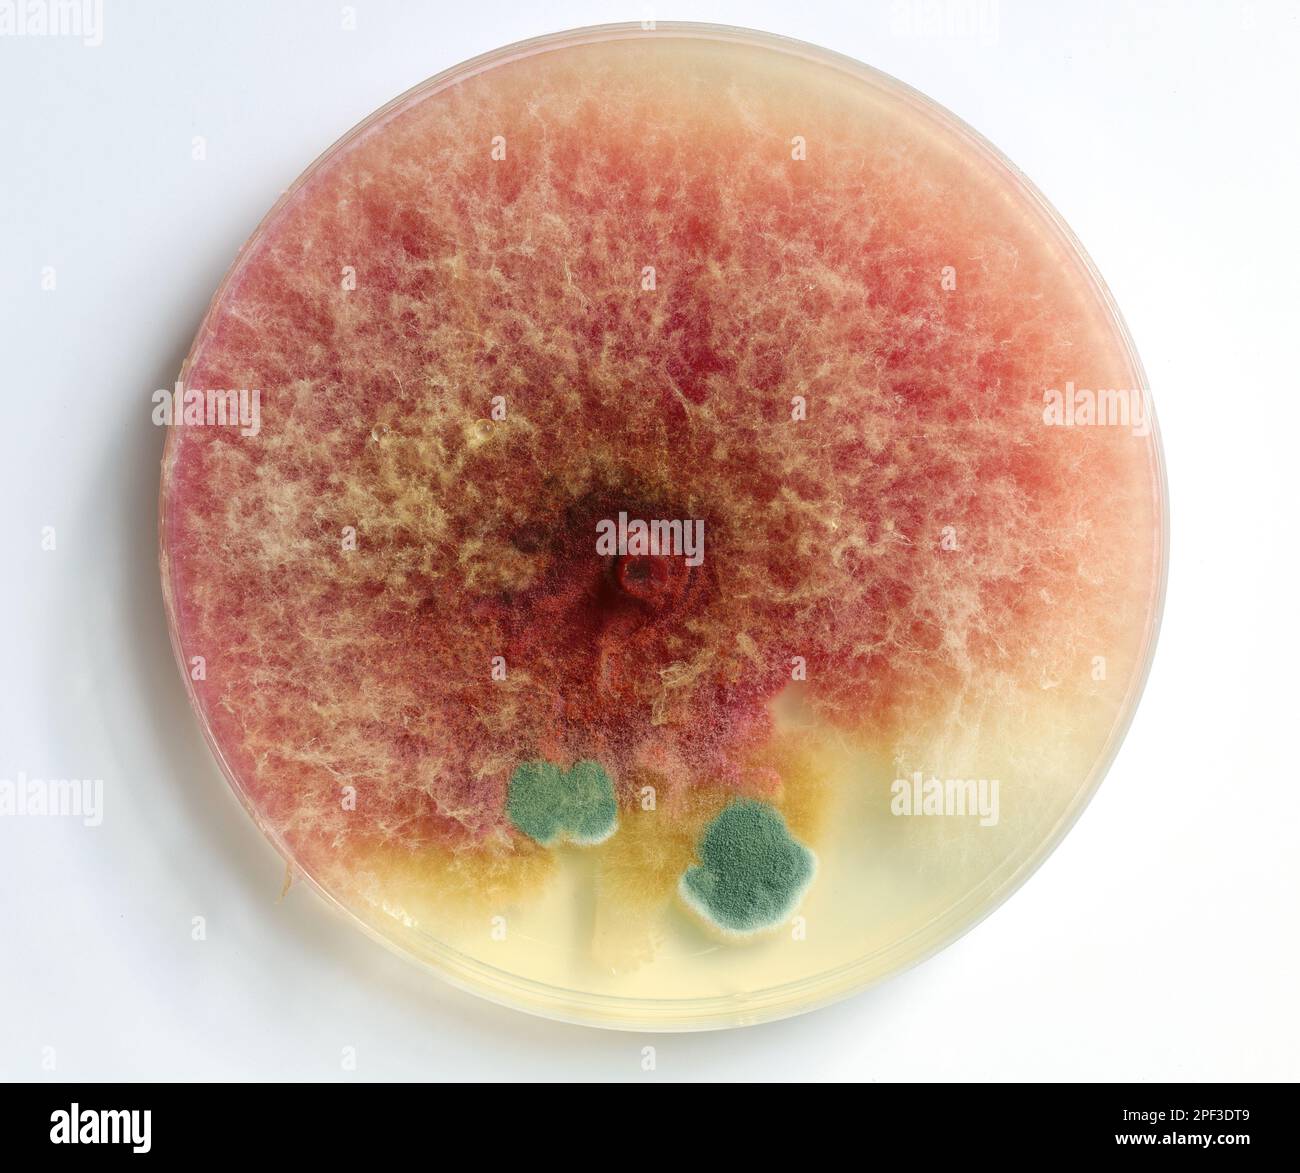 Close-up of mold growing in a petri dish. Fusarium, Penicillium. Stock Photo